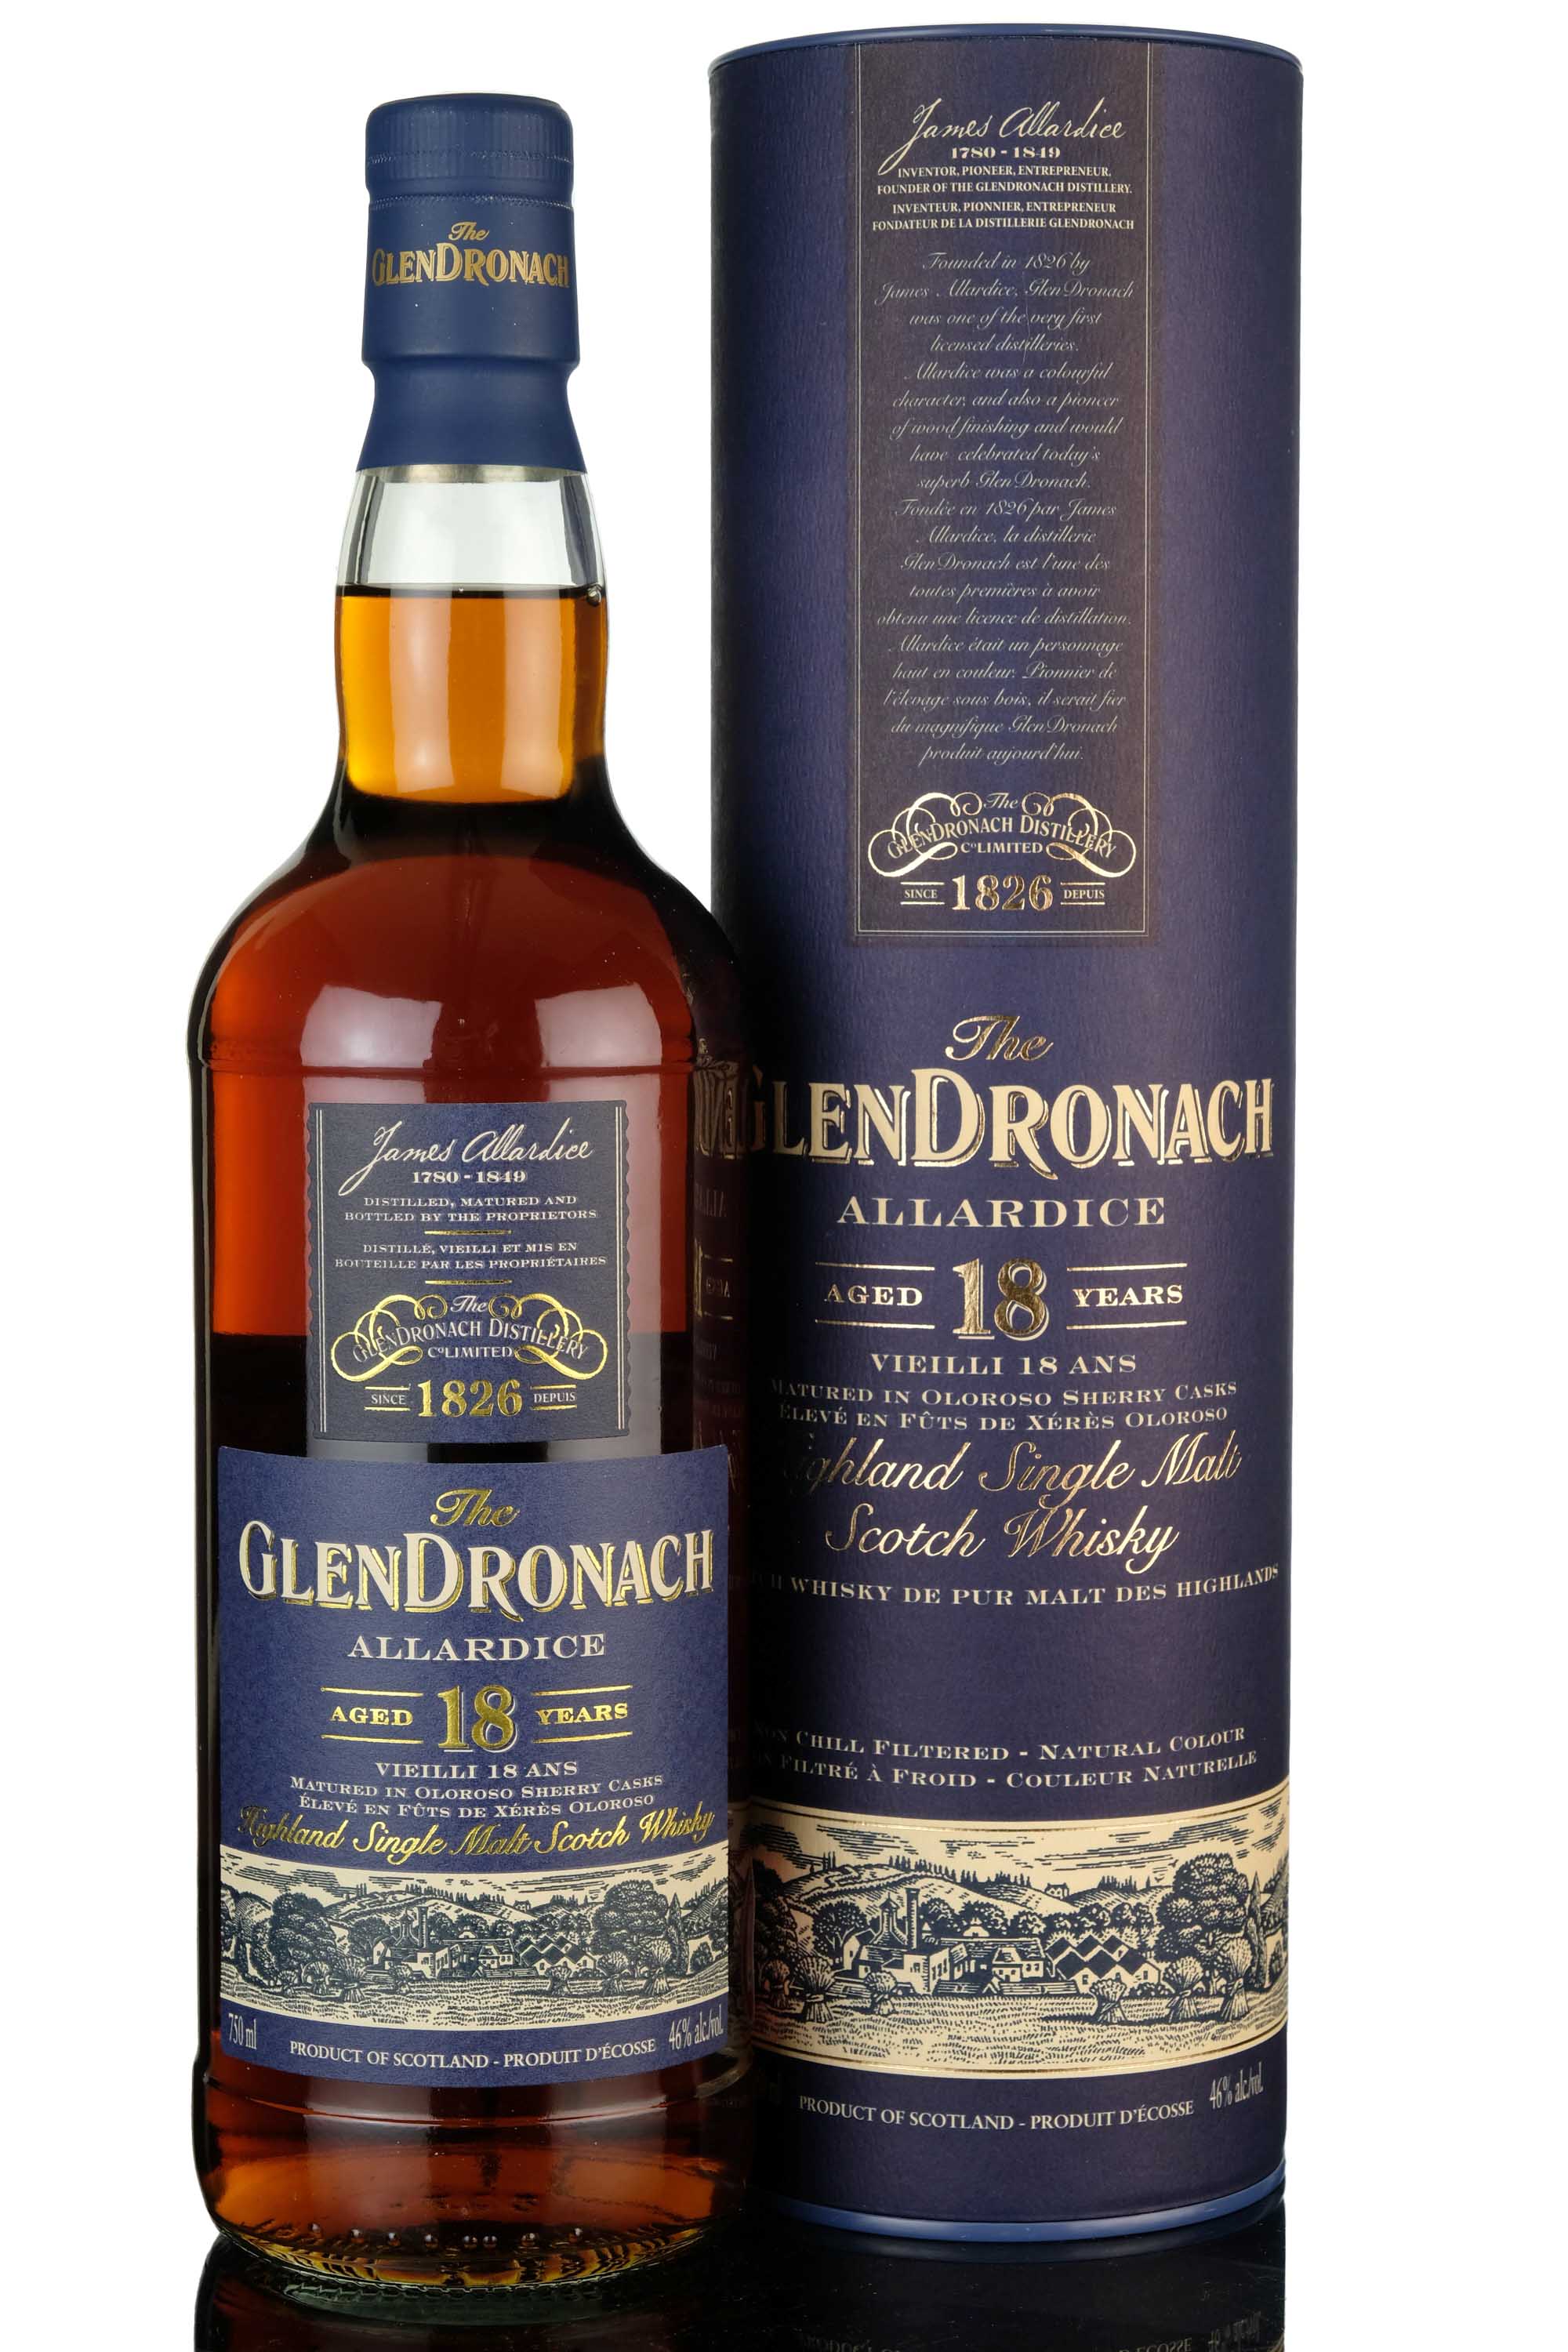 Glendronach 18 Year Old - Allardice - 2014 Release